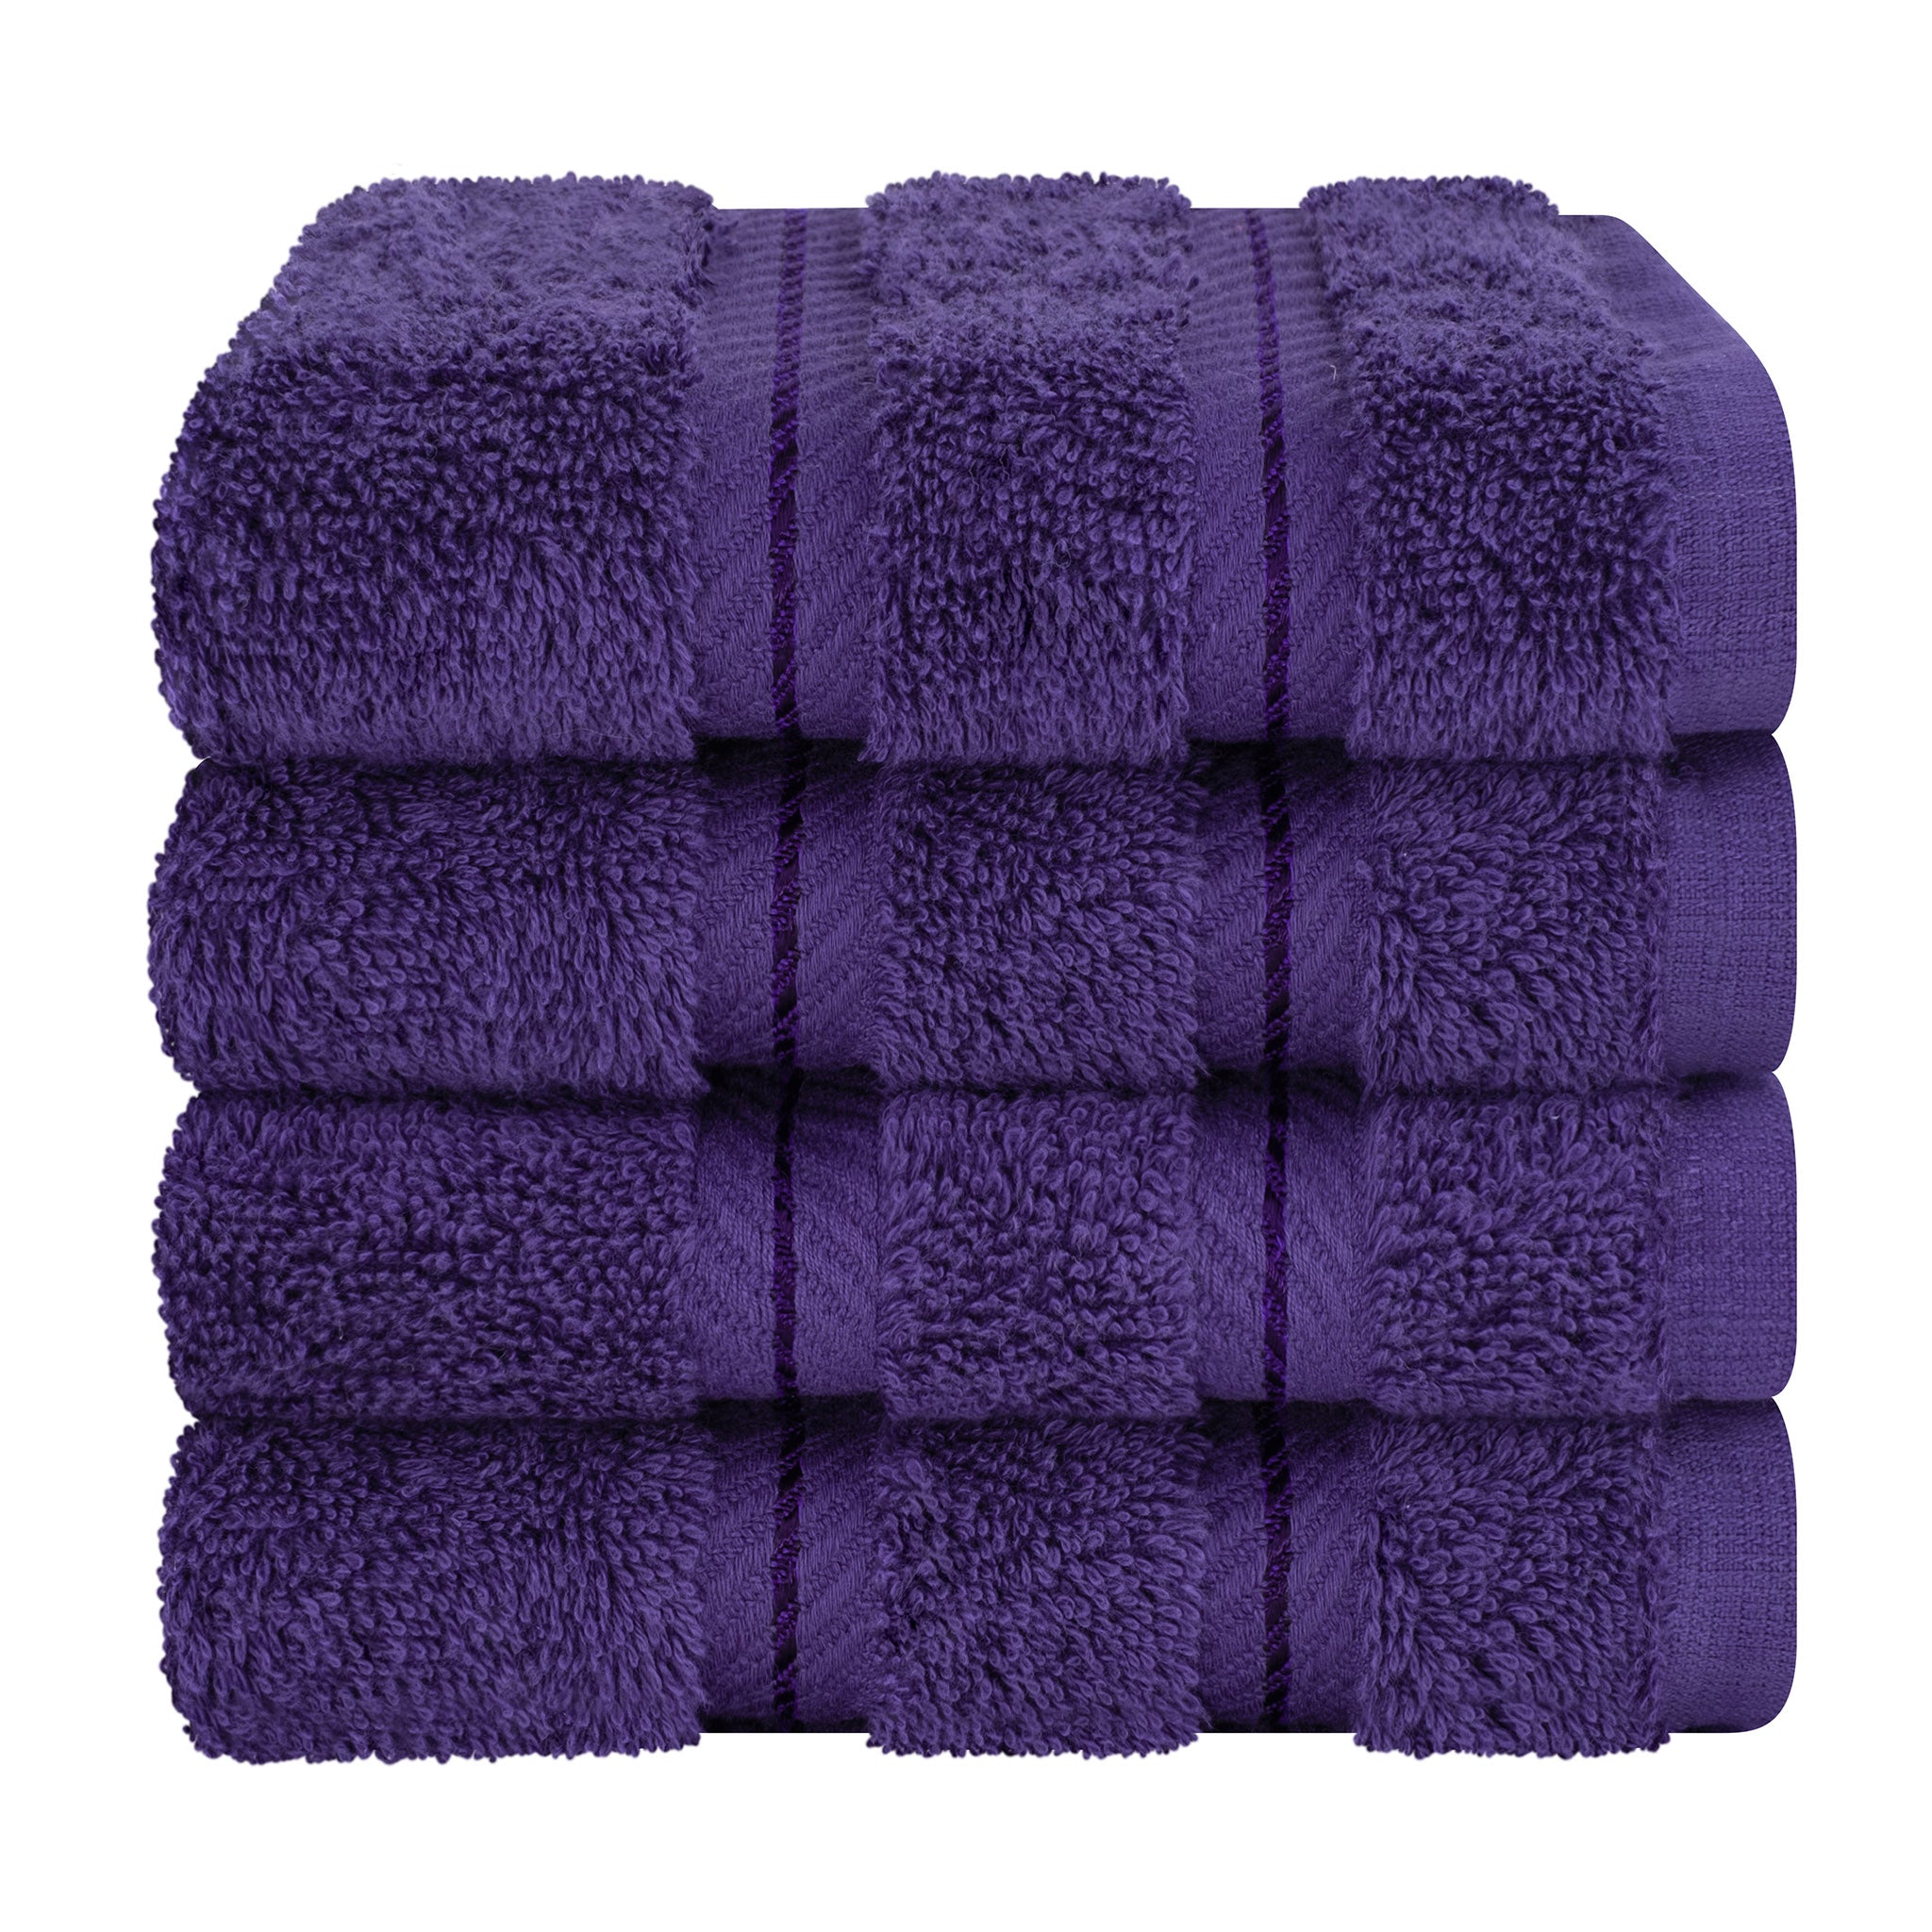 American Soft Linen 100% Turkish Cotton 4 Piece Washcloth Set purple-7